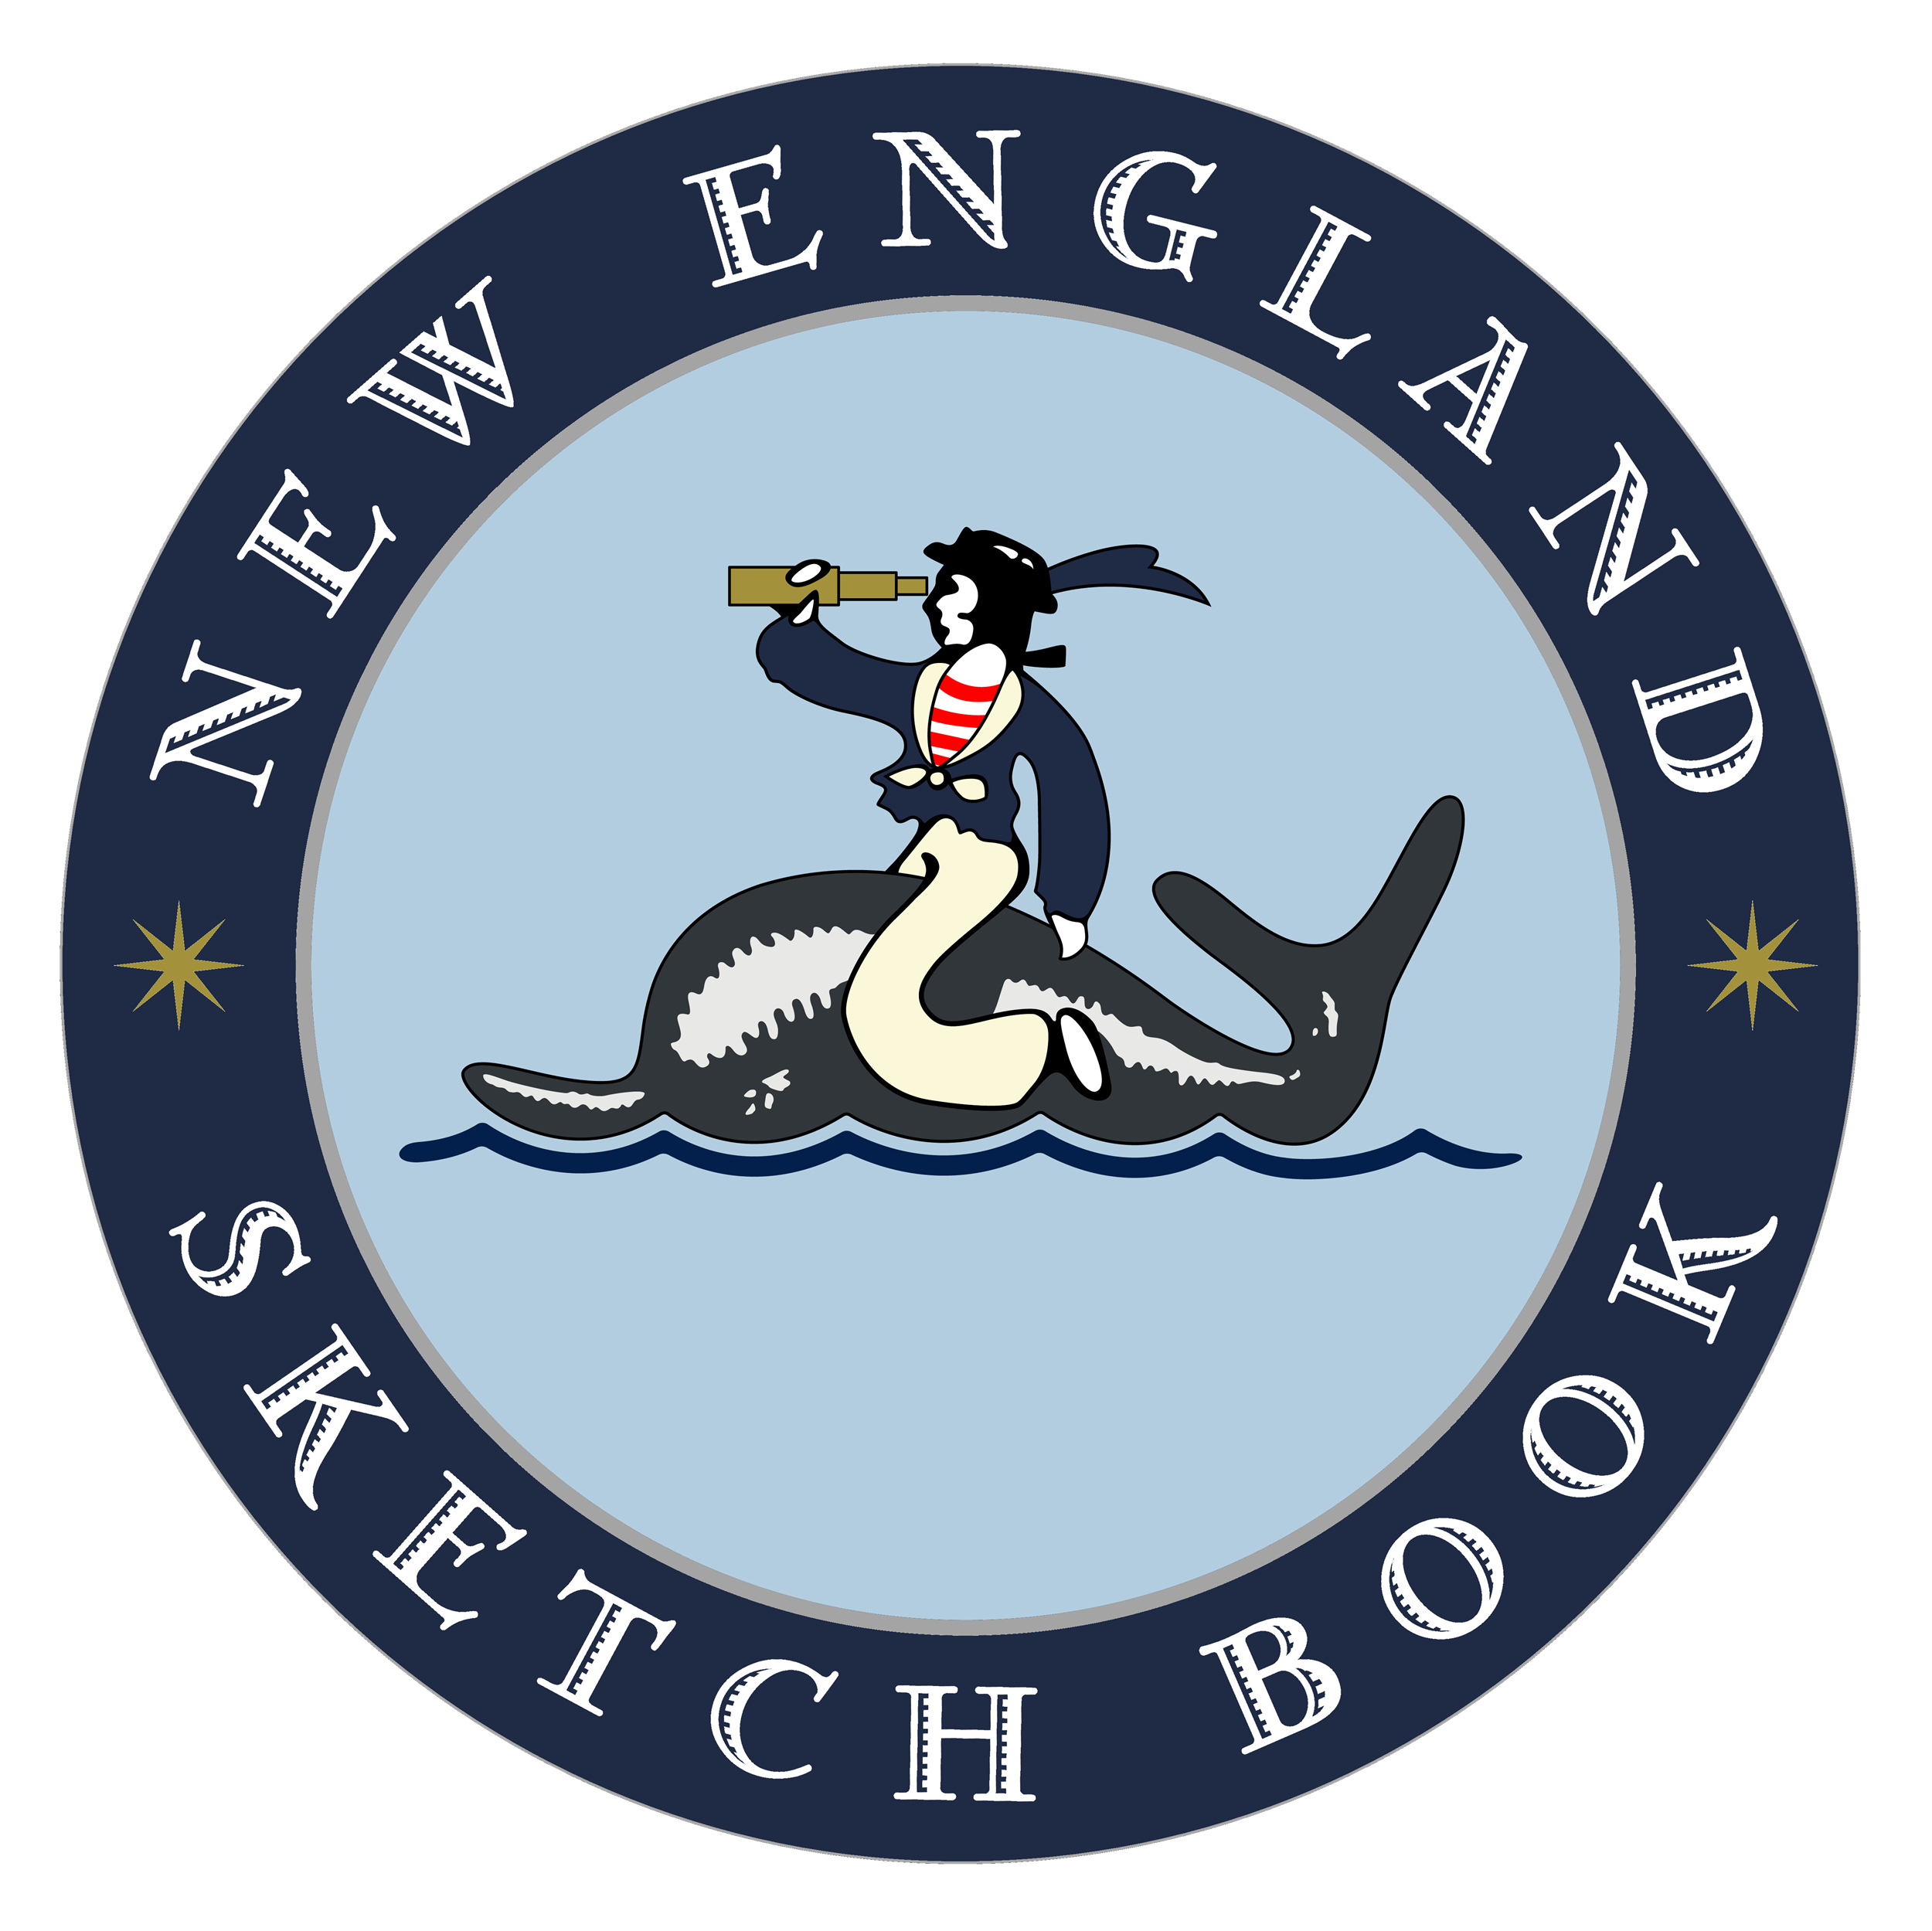 New England Sketch Book